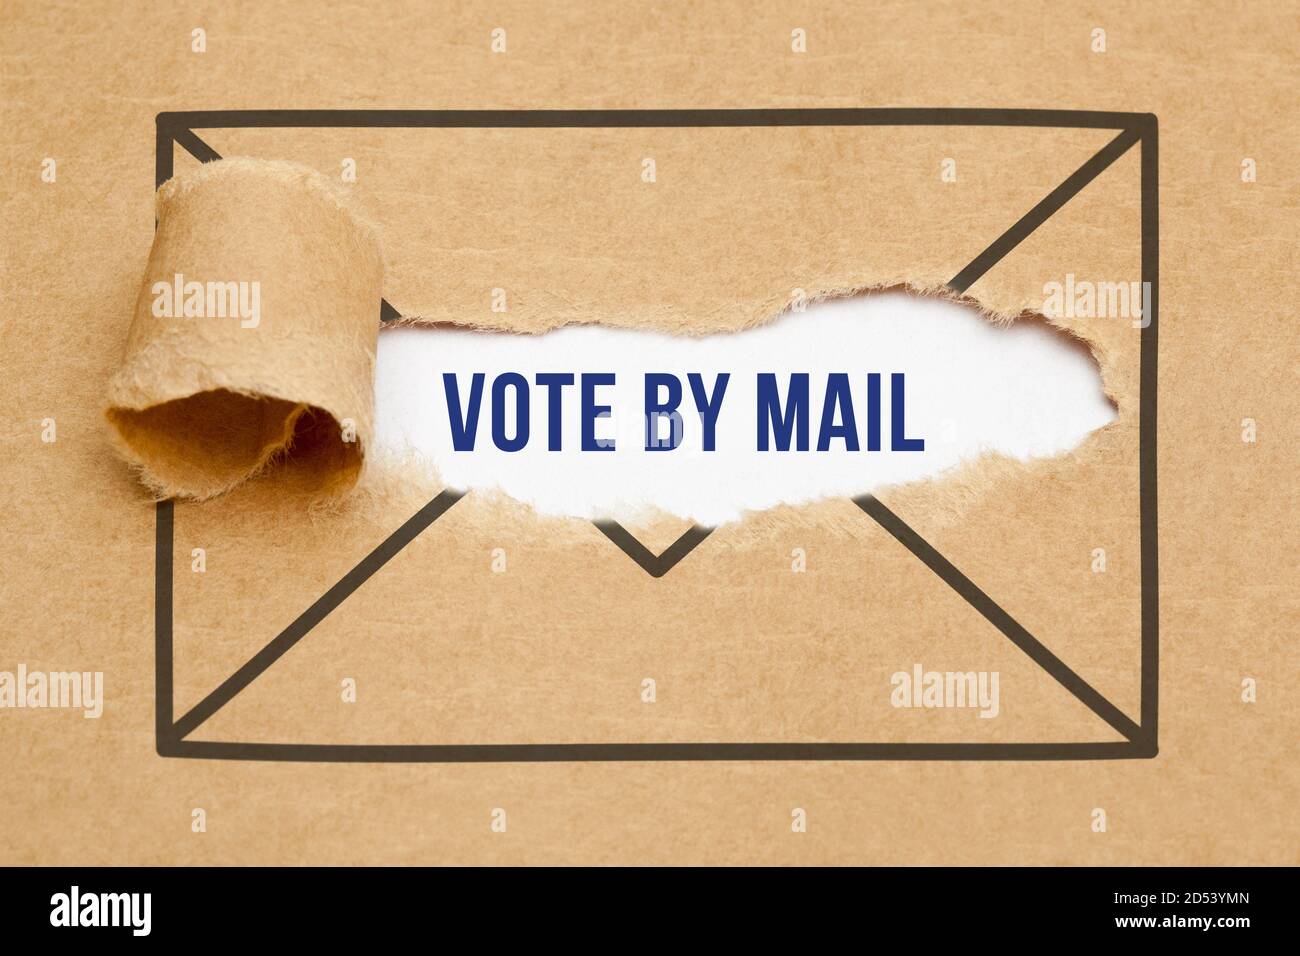 Texto Vote por correo apareciendo detrás de un dibujo de sobre de papel marrón rasgado. Votación por correo concepto de elecciones de votación. Foto de stock